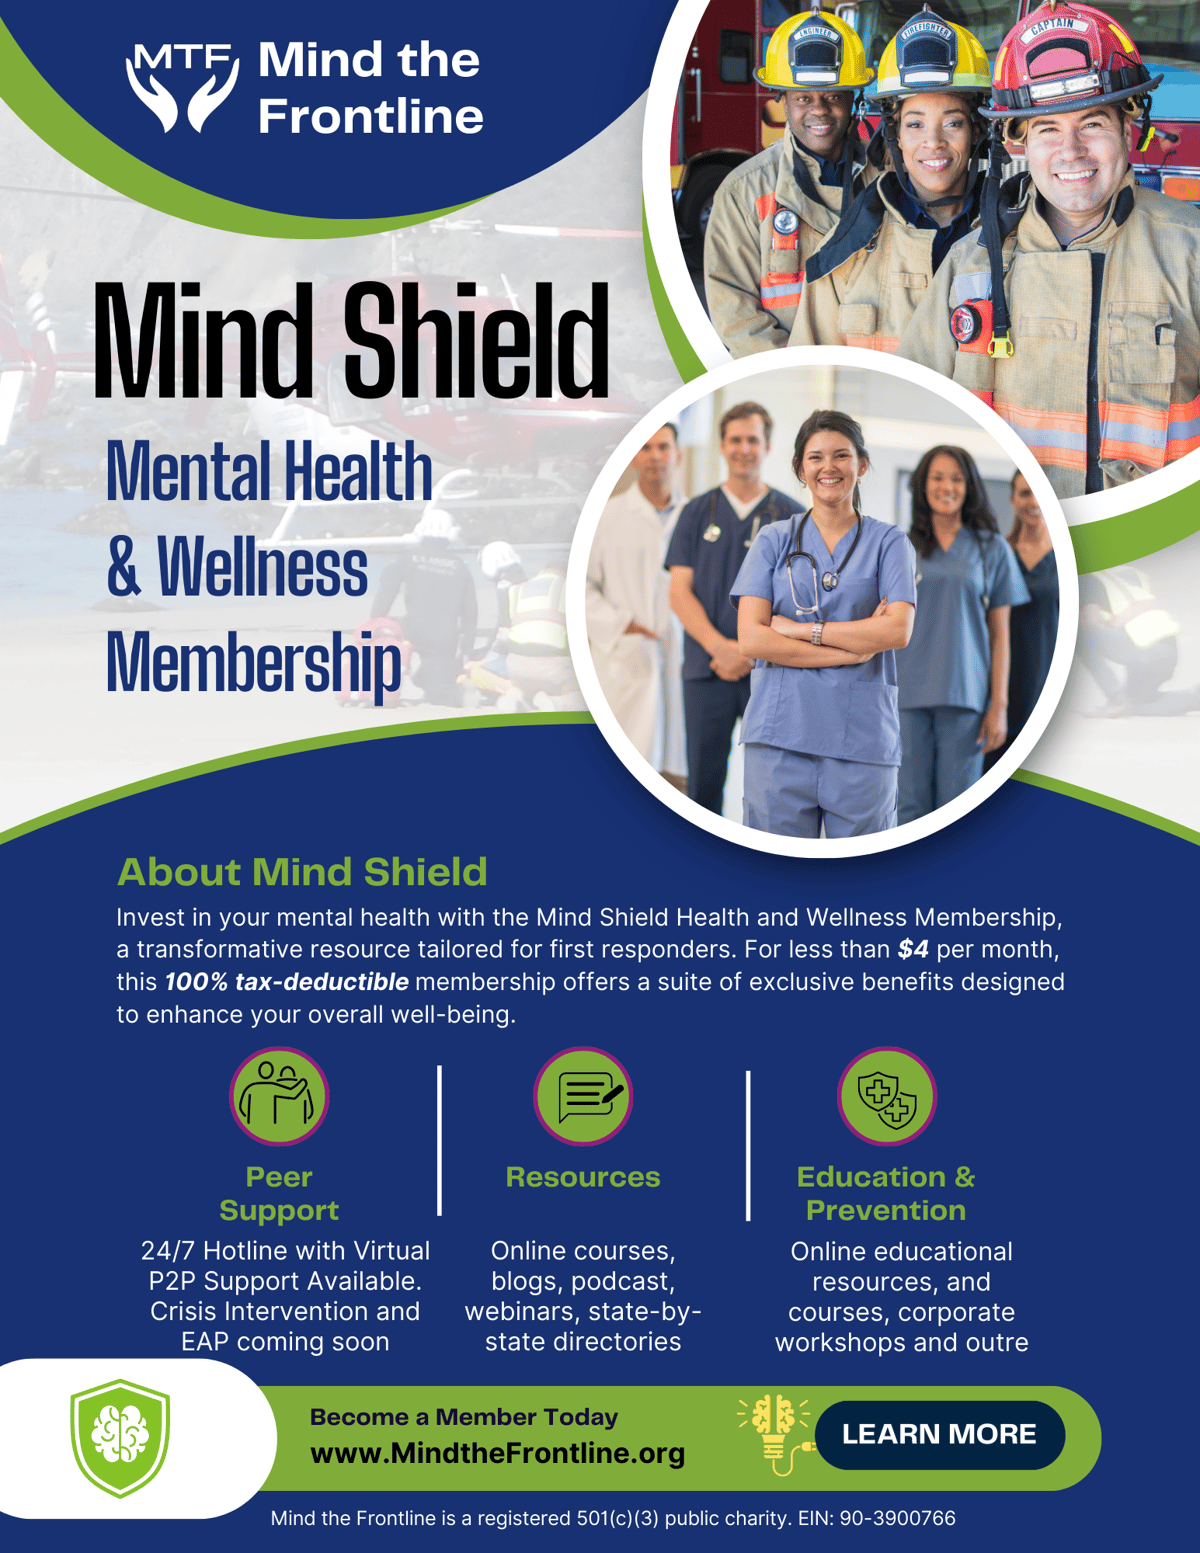 About MTFL_s Mind Shield Program